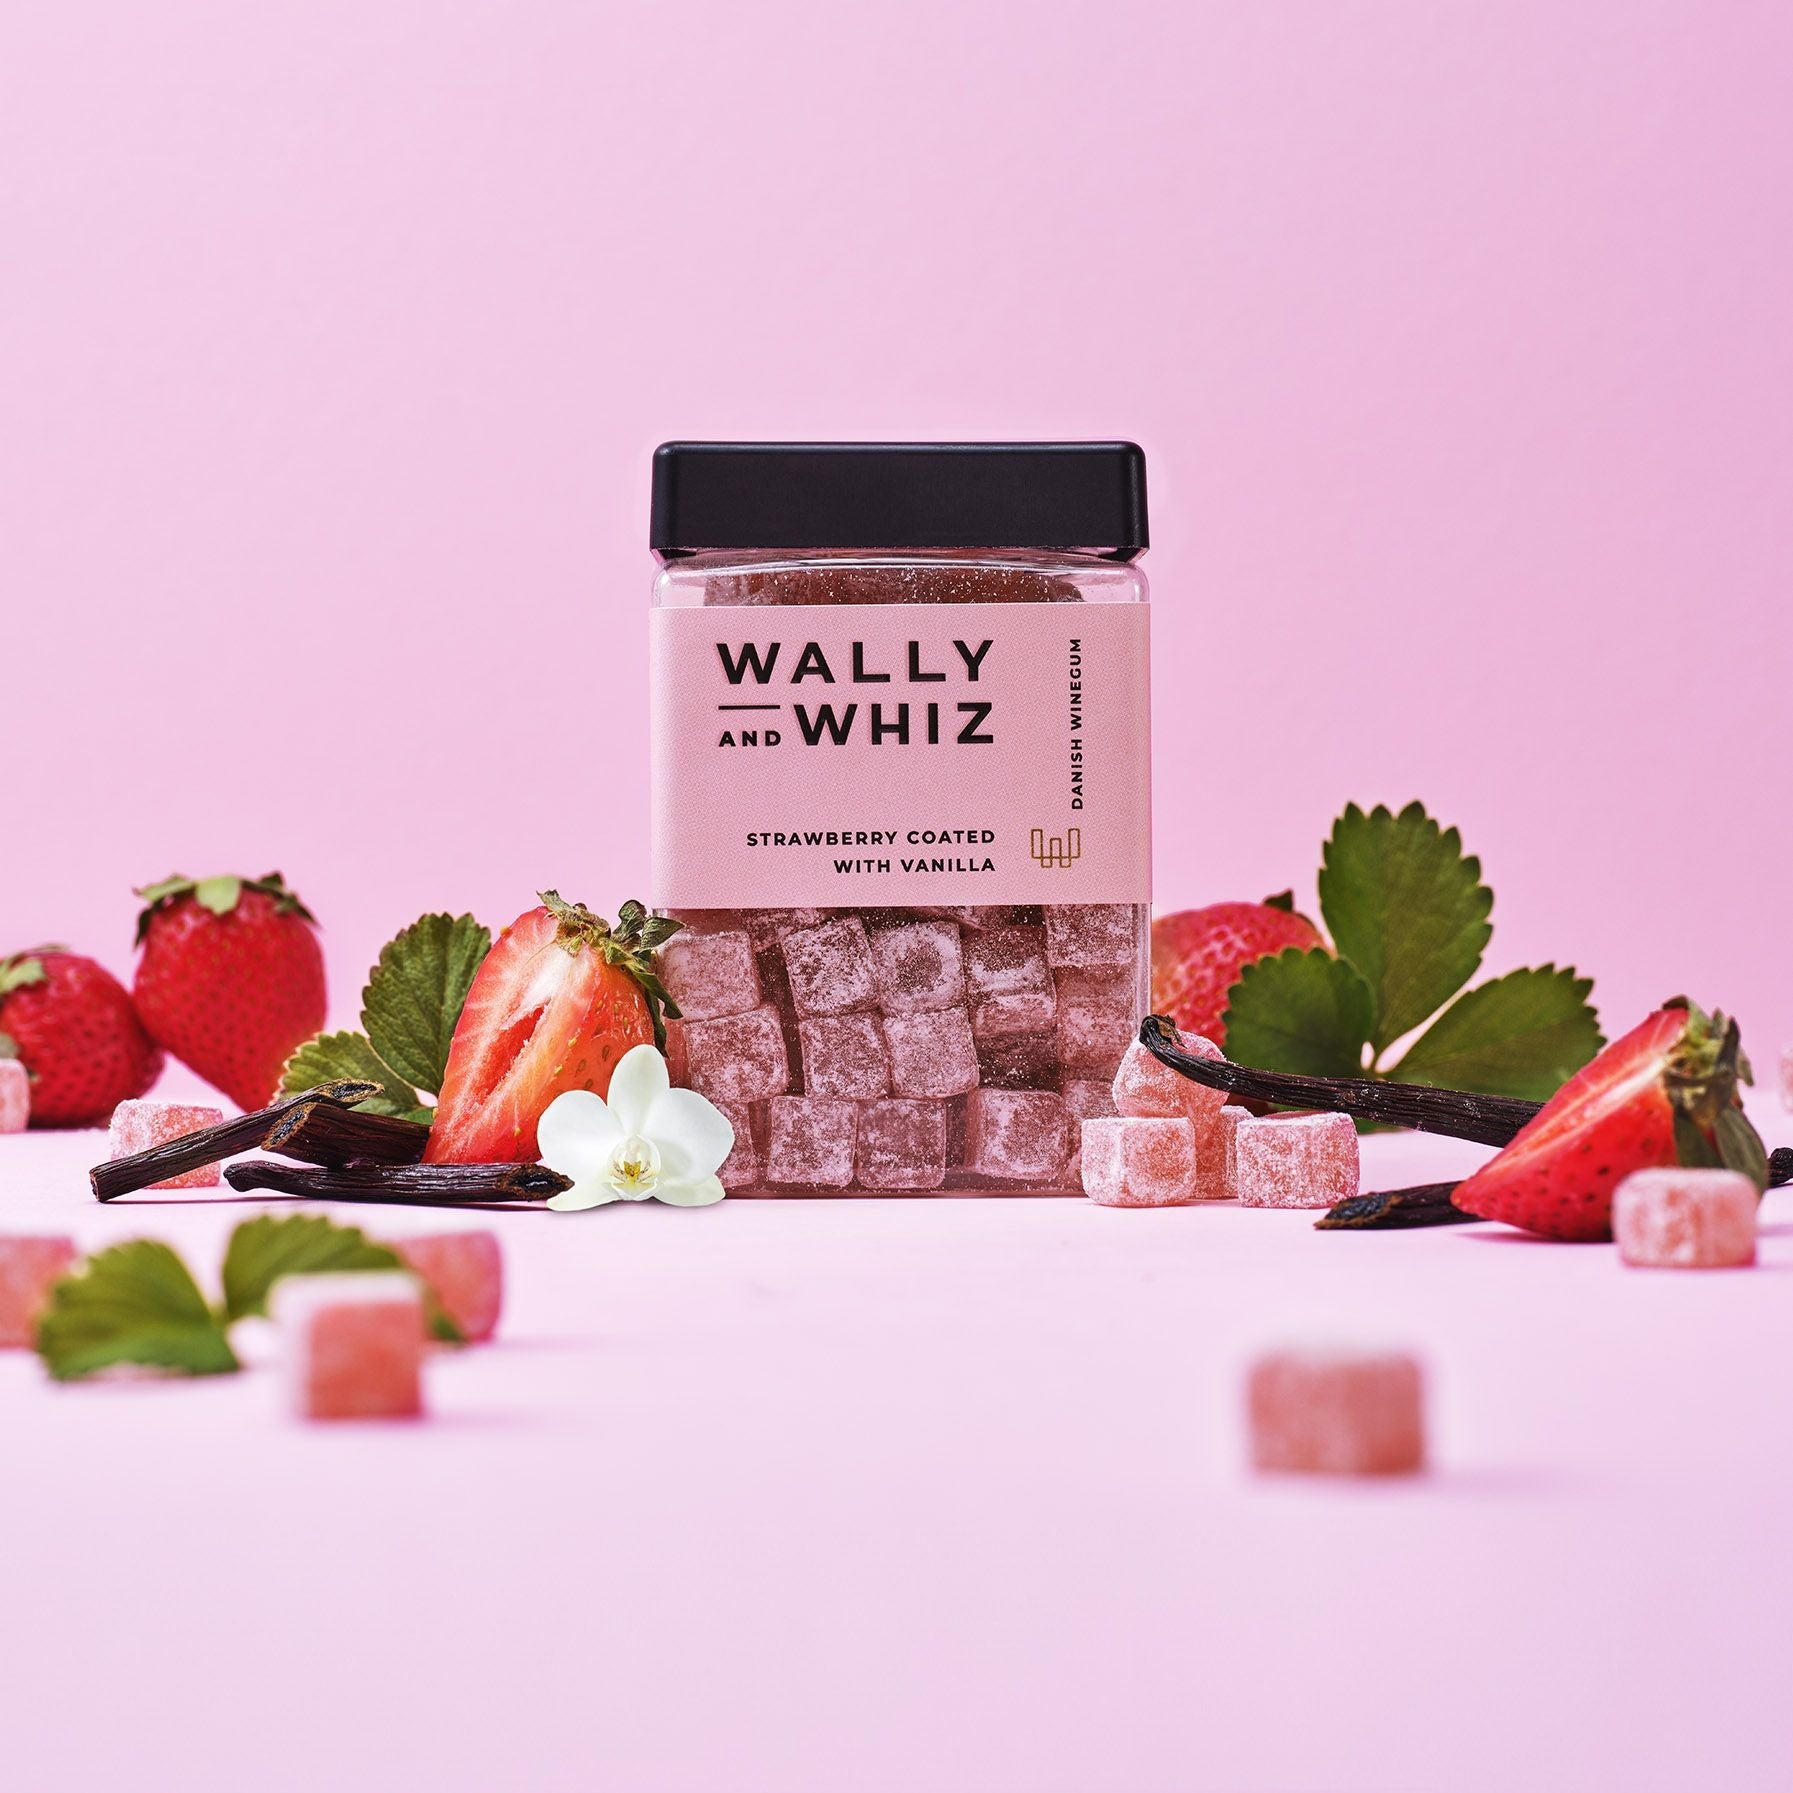 Wally and Whiz La boîte d'été de la fleur de sureau avec casquette / fraise avec vanille, 480 g